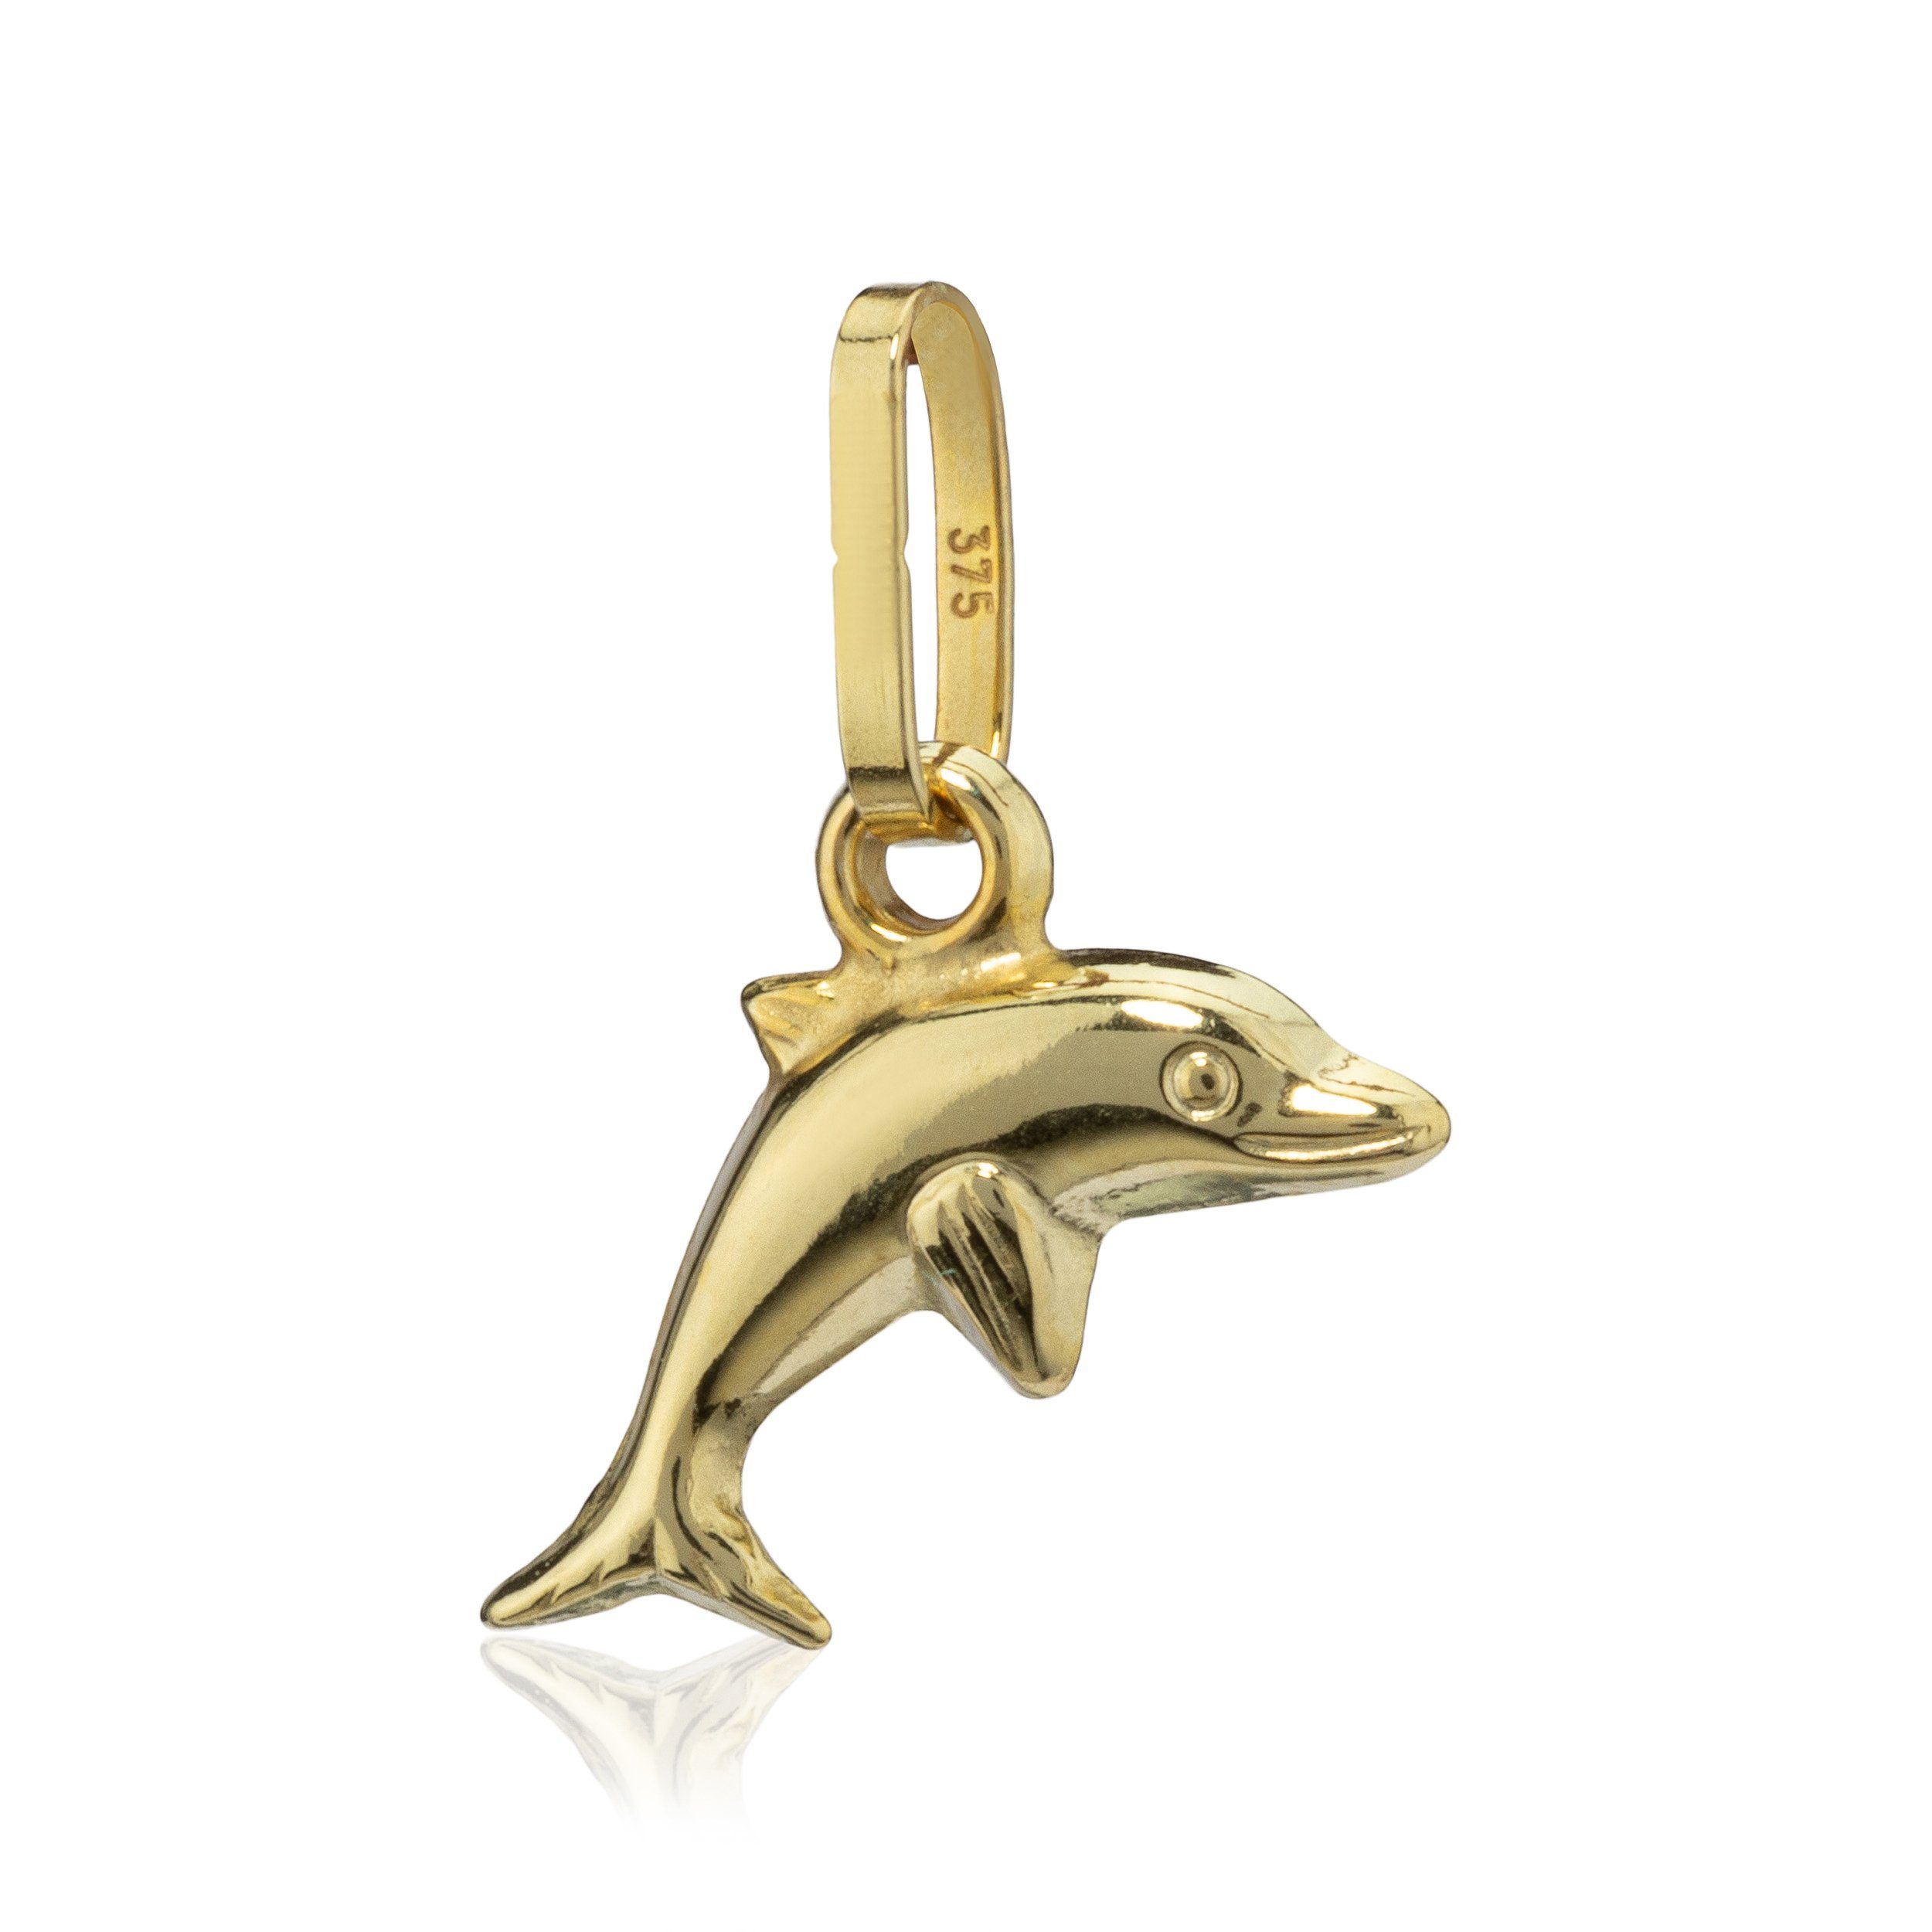 NKlaus 375 9 Karat Baby Kettenanh Gold Kettenanhänger Gelb kleine Delfin